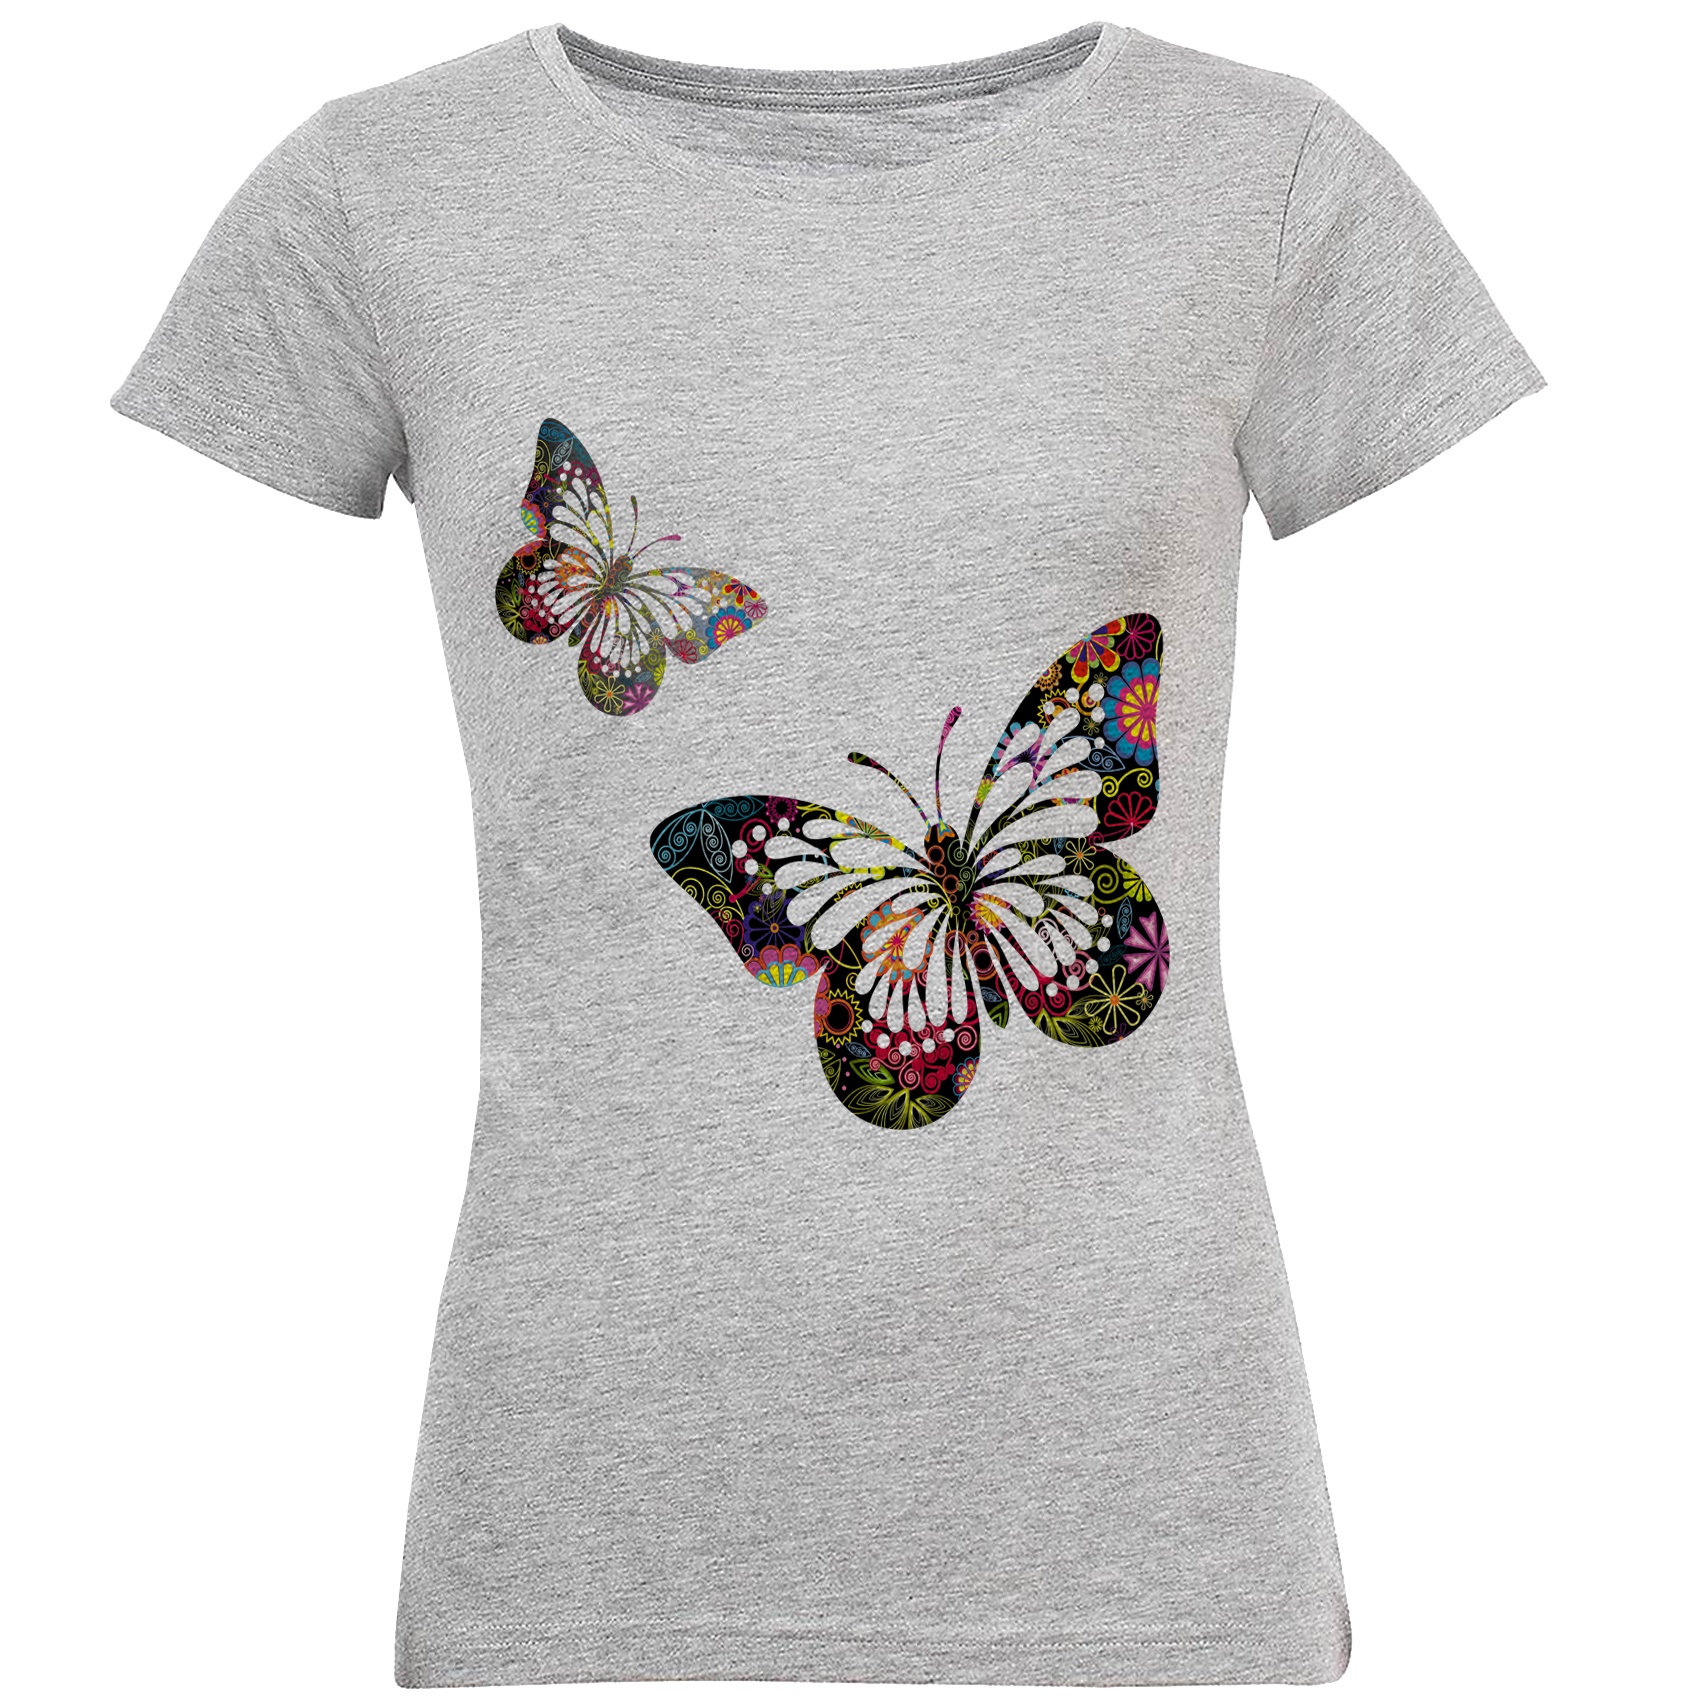 نقد و بررسی تی شرت آستین کوتاه زنانه طرح پروانه کد S20 توسط خریداران